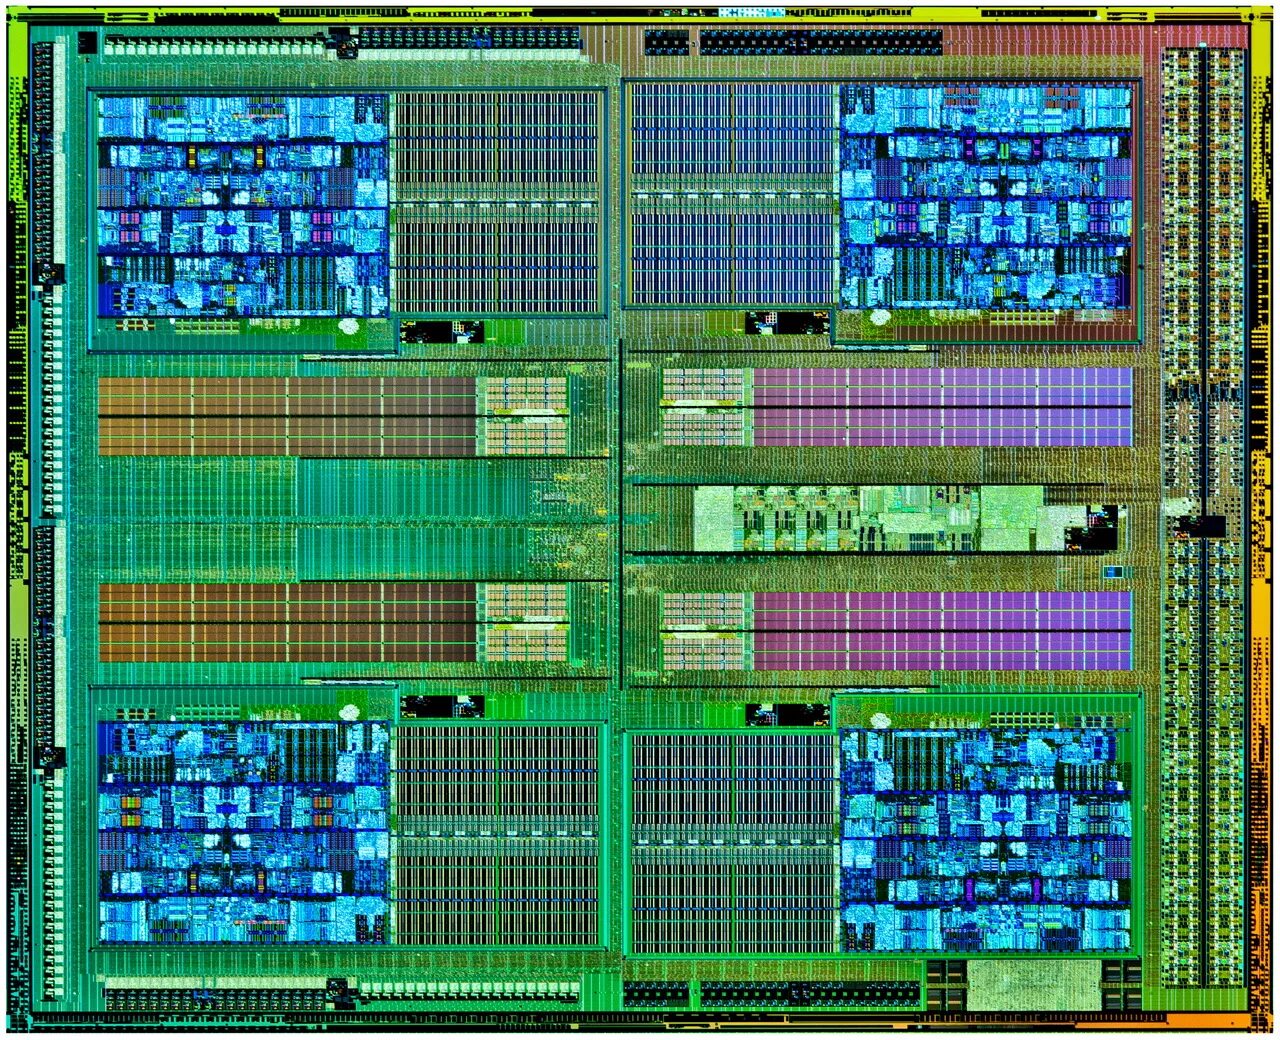 FX 6300 процессор архитектура. 5 НМ техпроцесс. АМД ФХ техпроцесс. Ядро процессора: Vishera. Process процессор